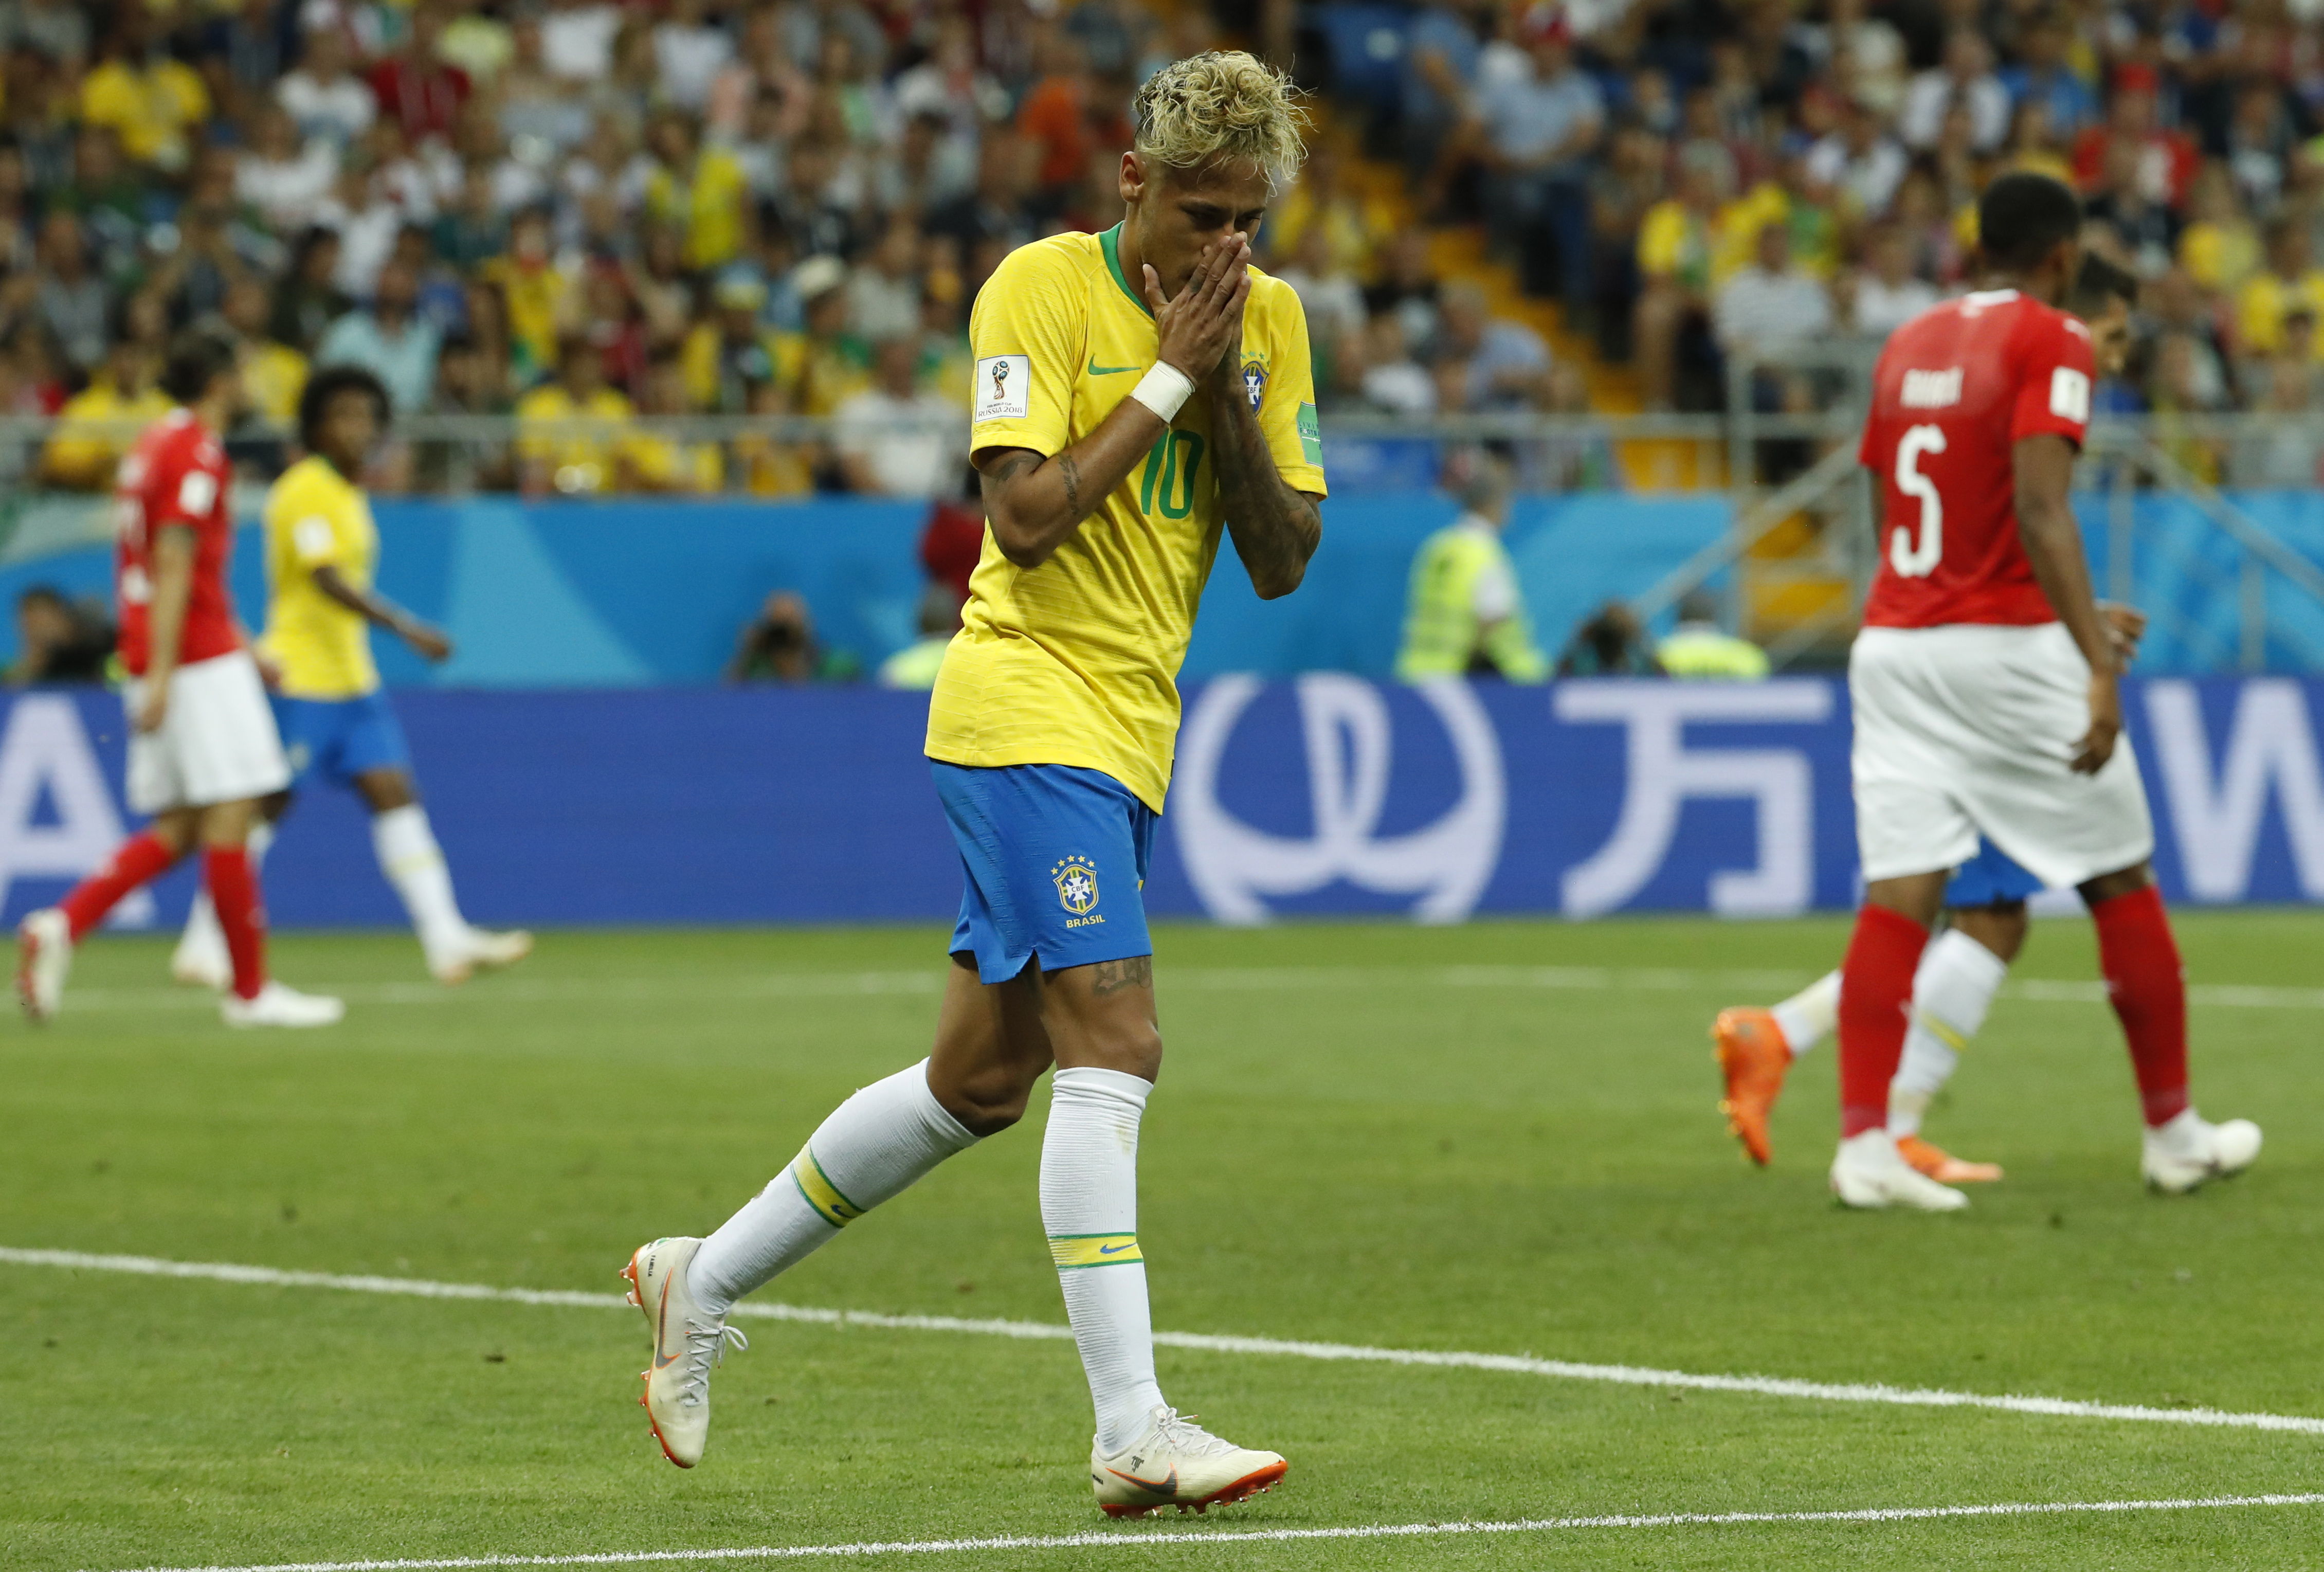 Neymar se entrena en el gimnasio tras decepcionante debut de Brasil en el Mundial